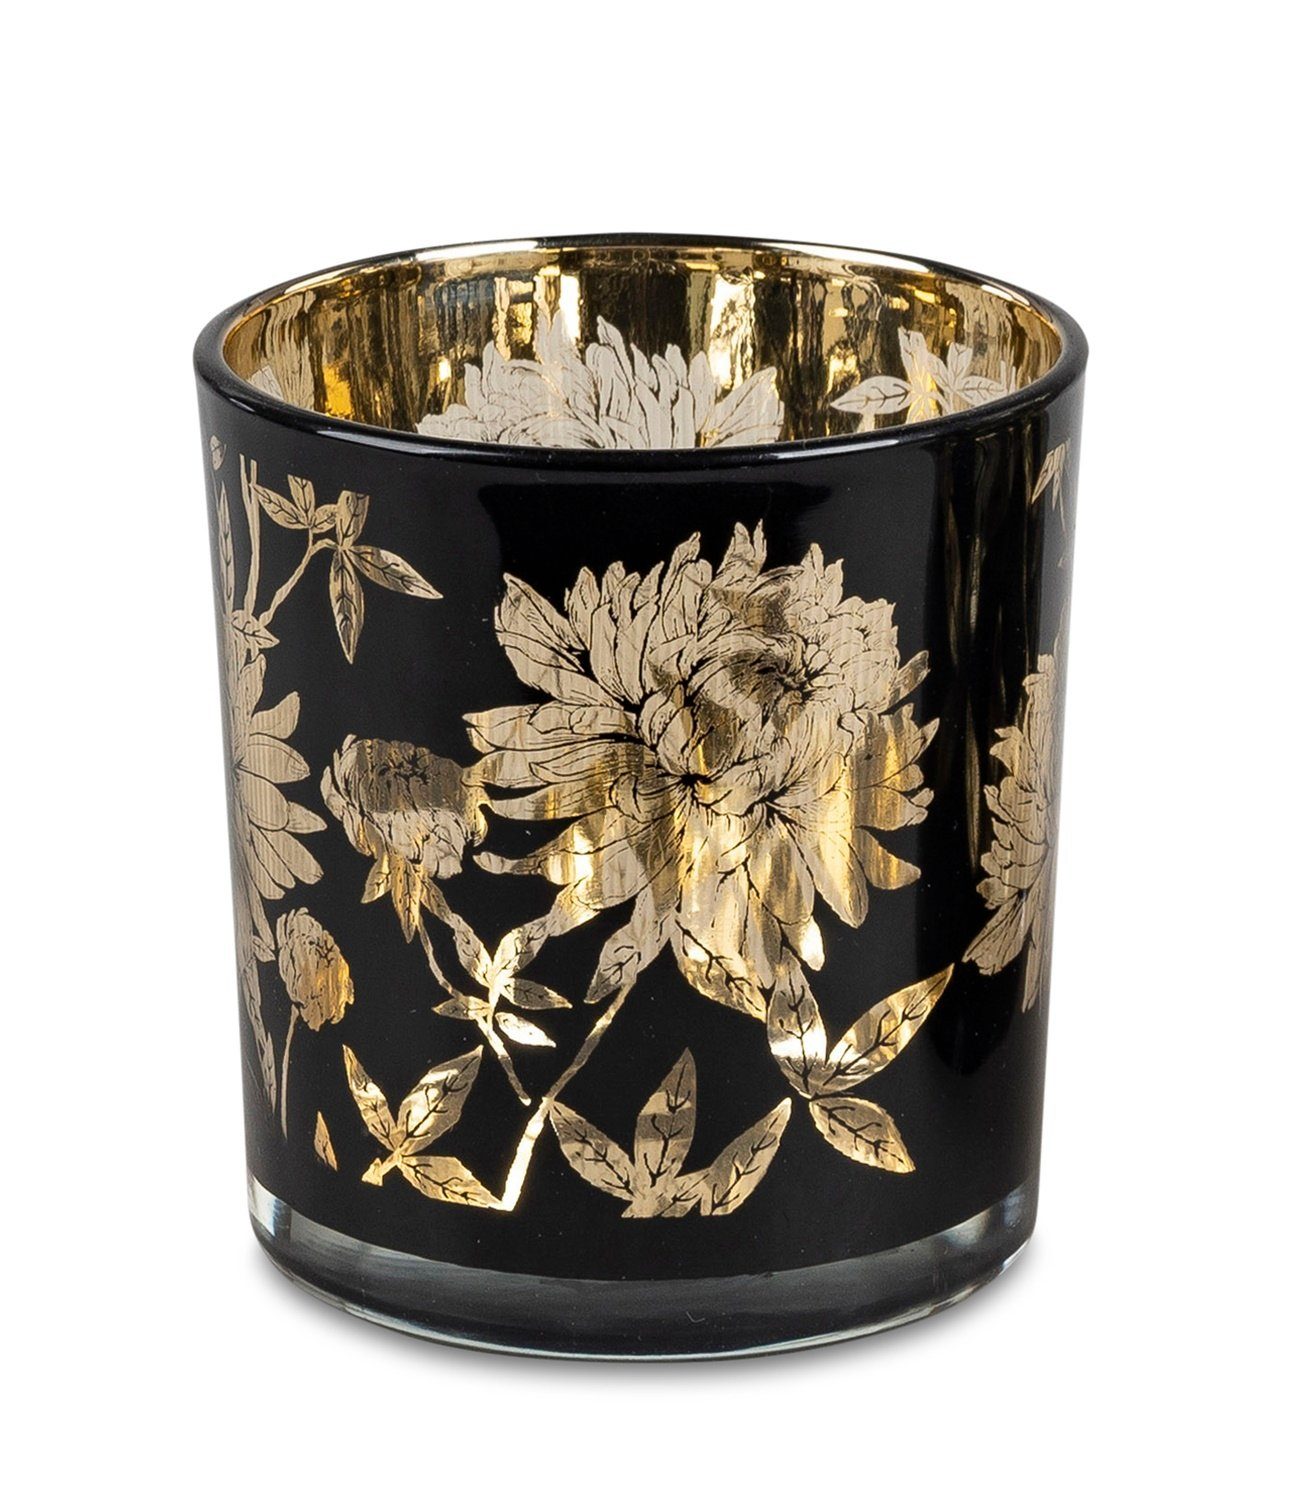 dekojohnson Windlicht Windlichtglas Teelichthalter schwarz gold 8cm